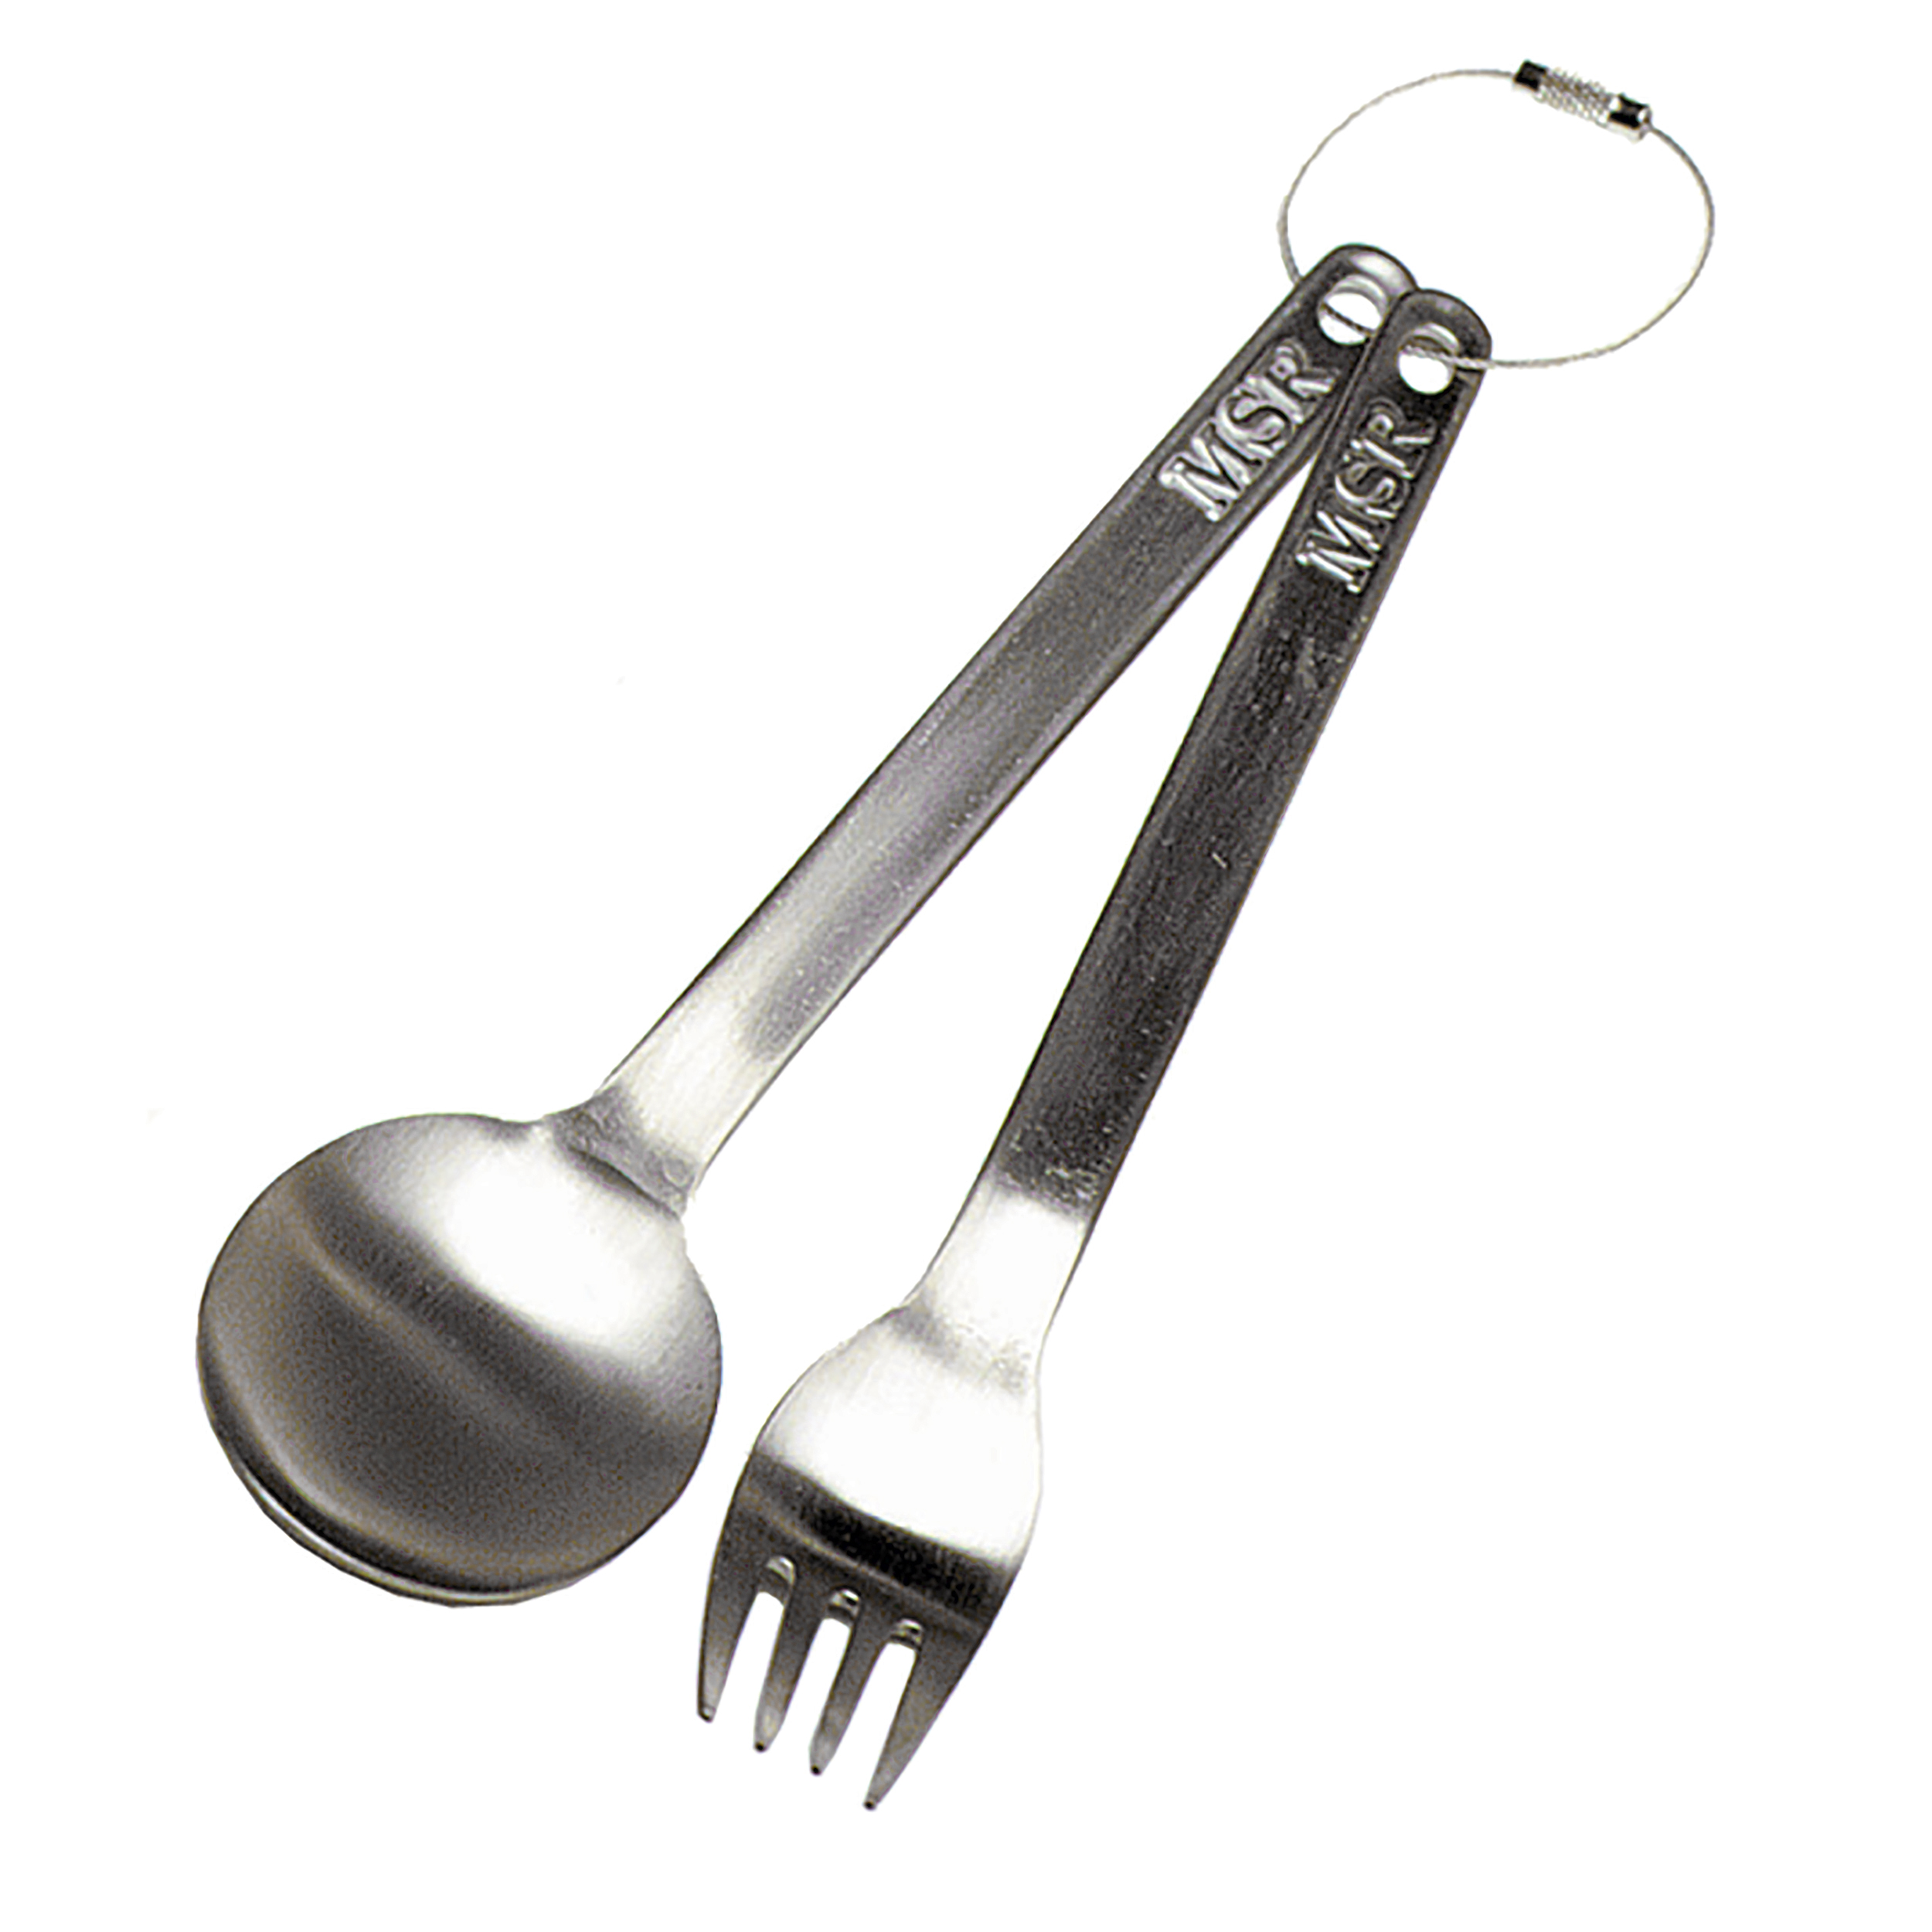 Titanium Kitchen Utility Spoon